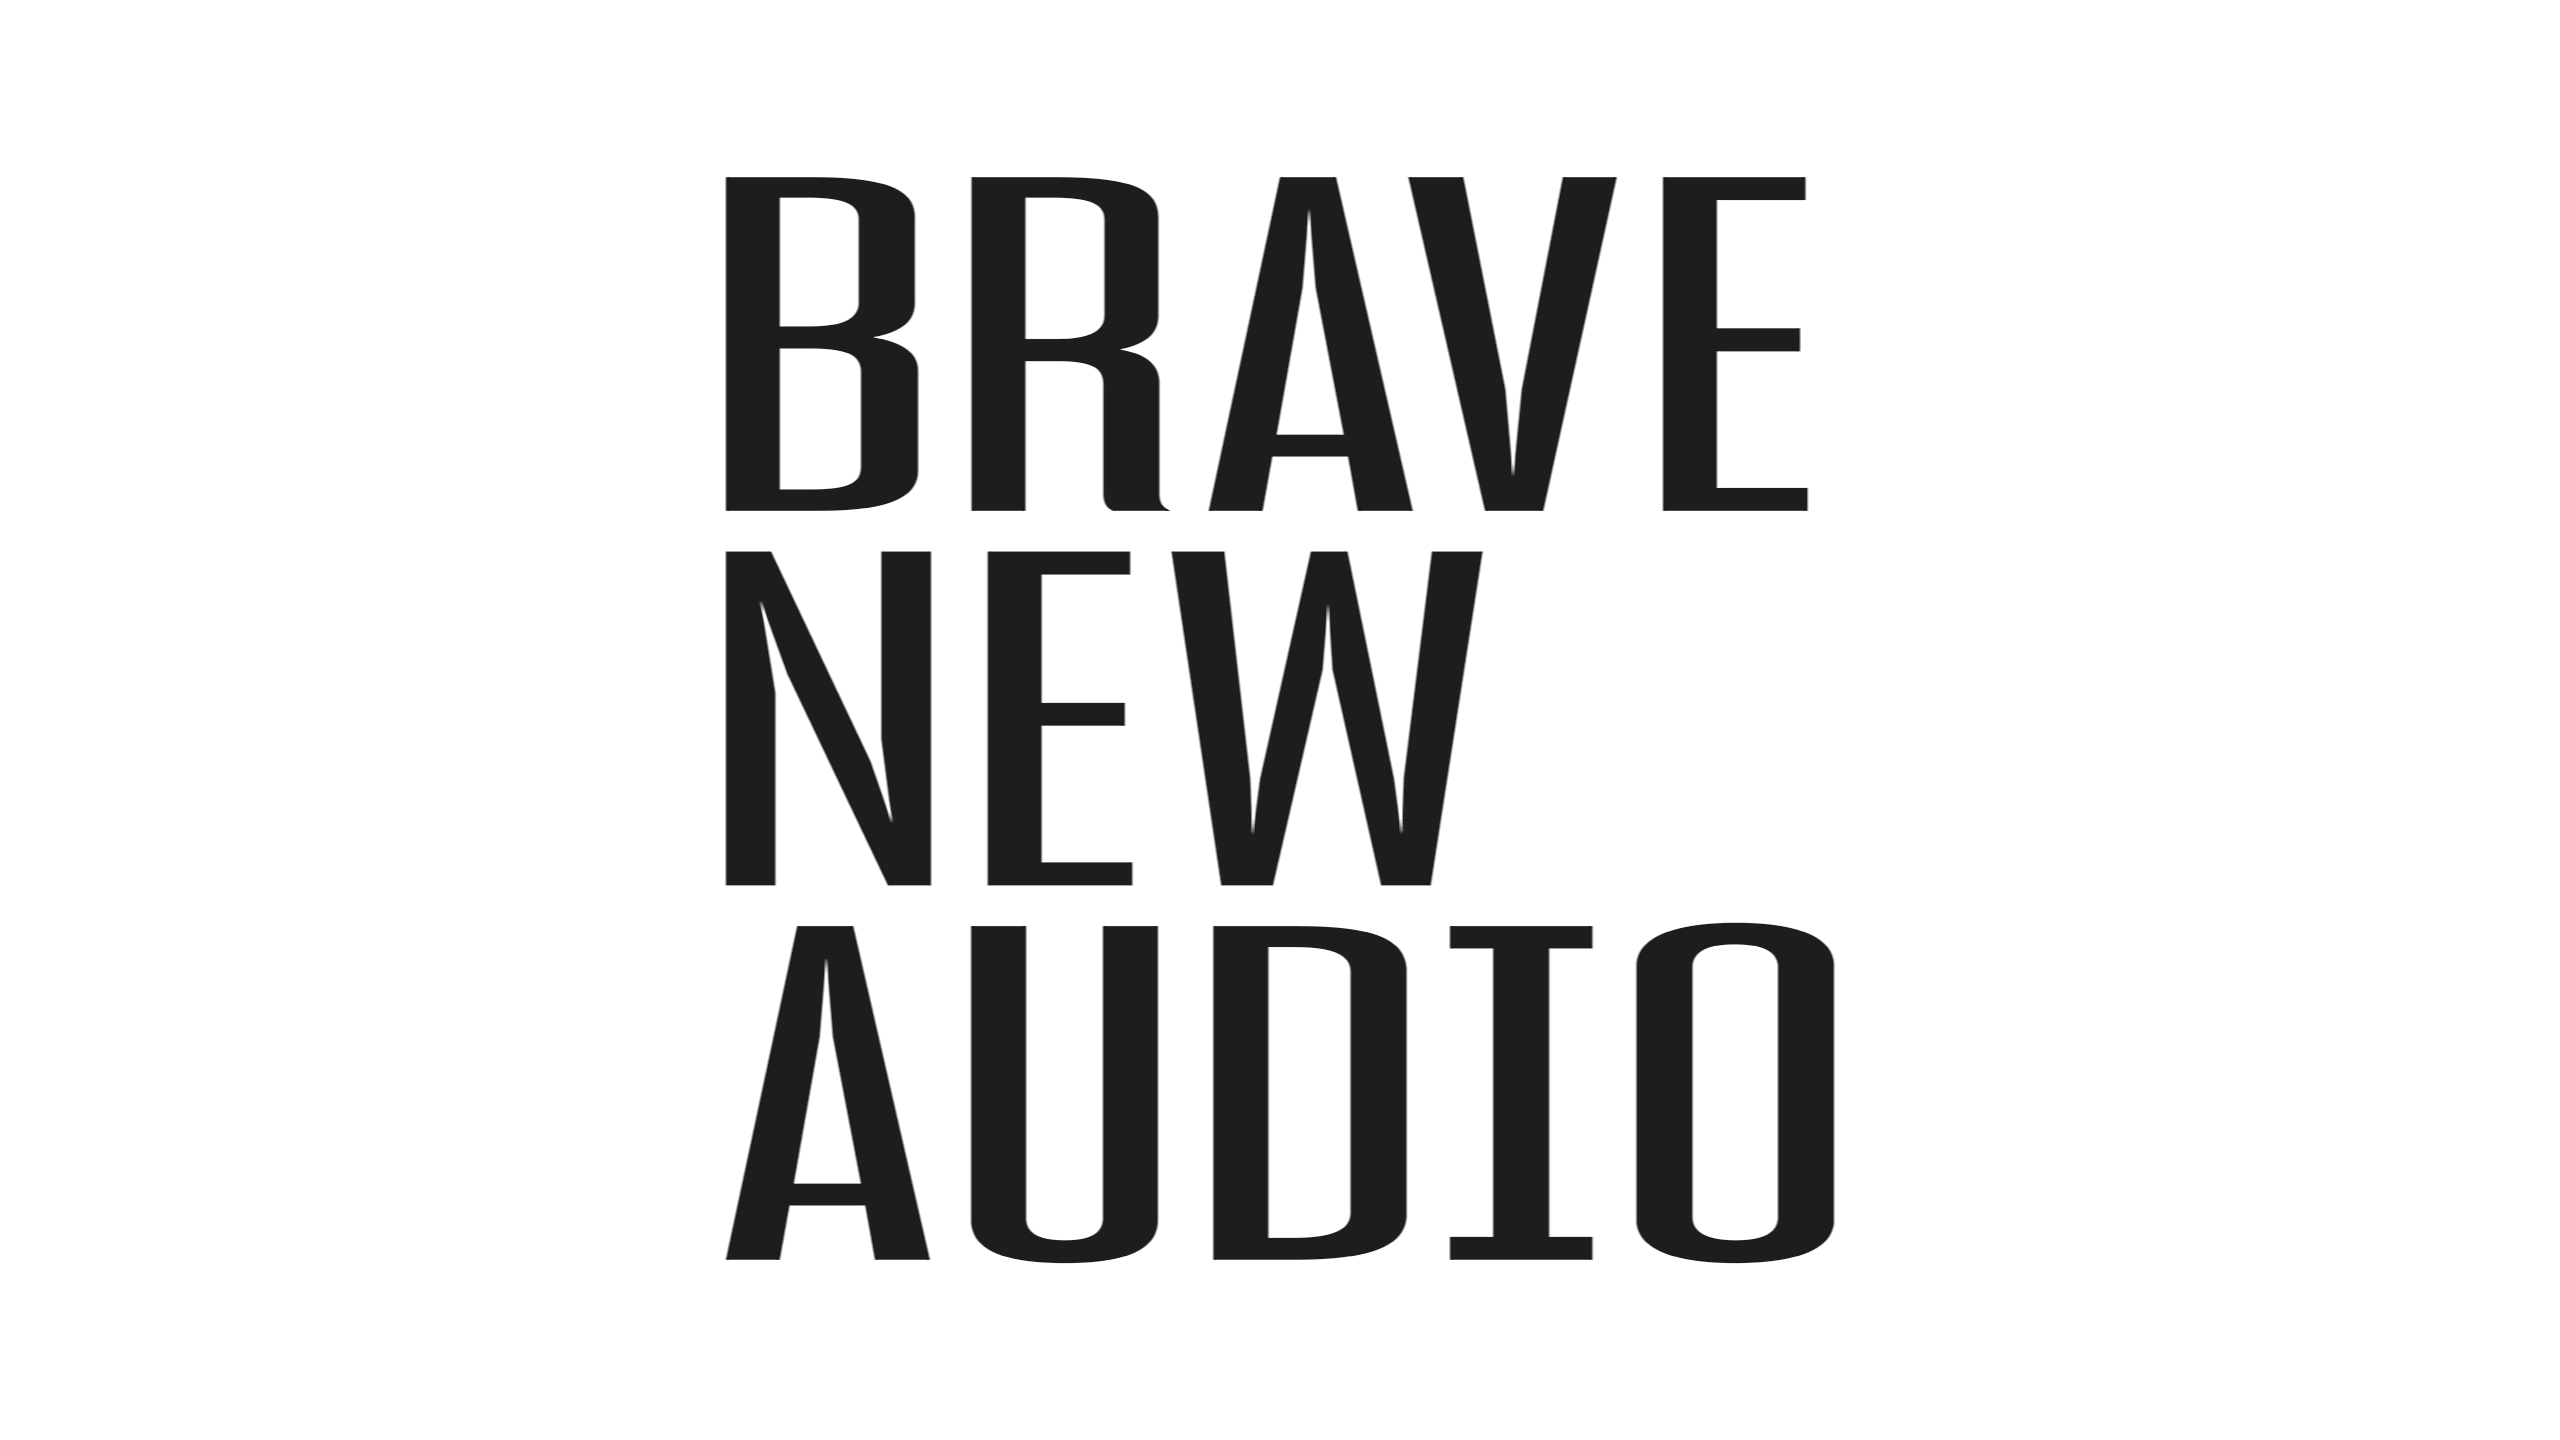 Brave new audio logo